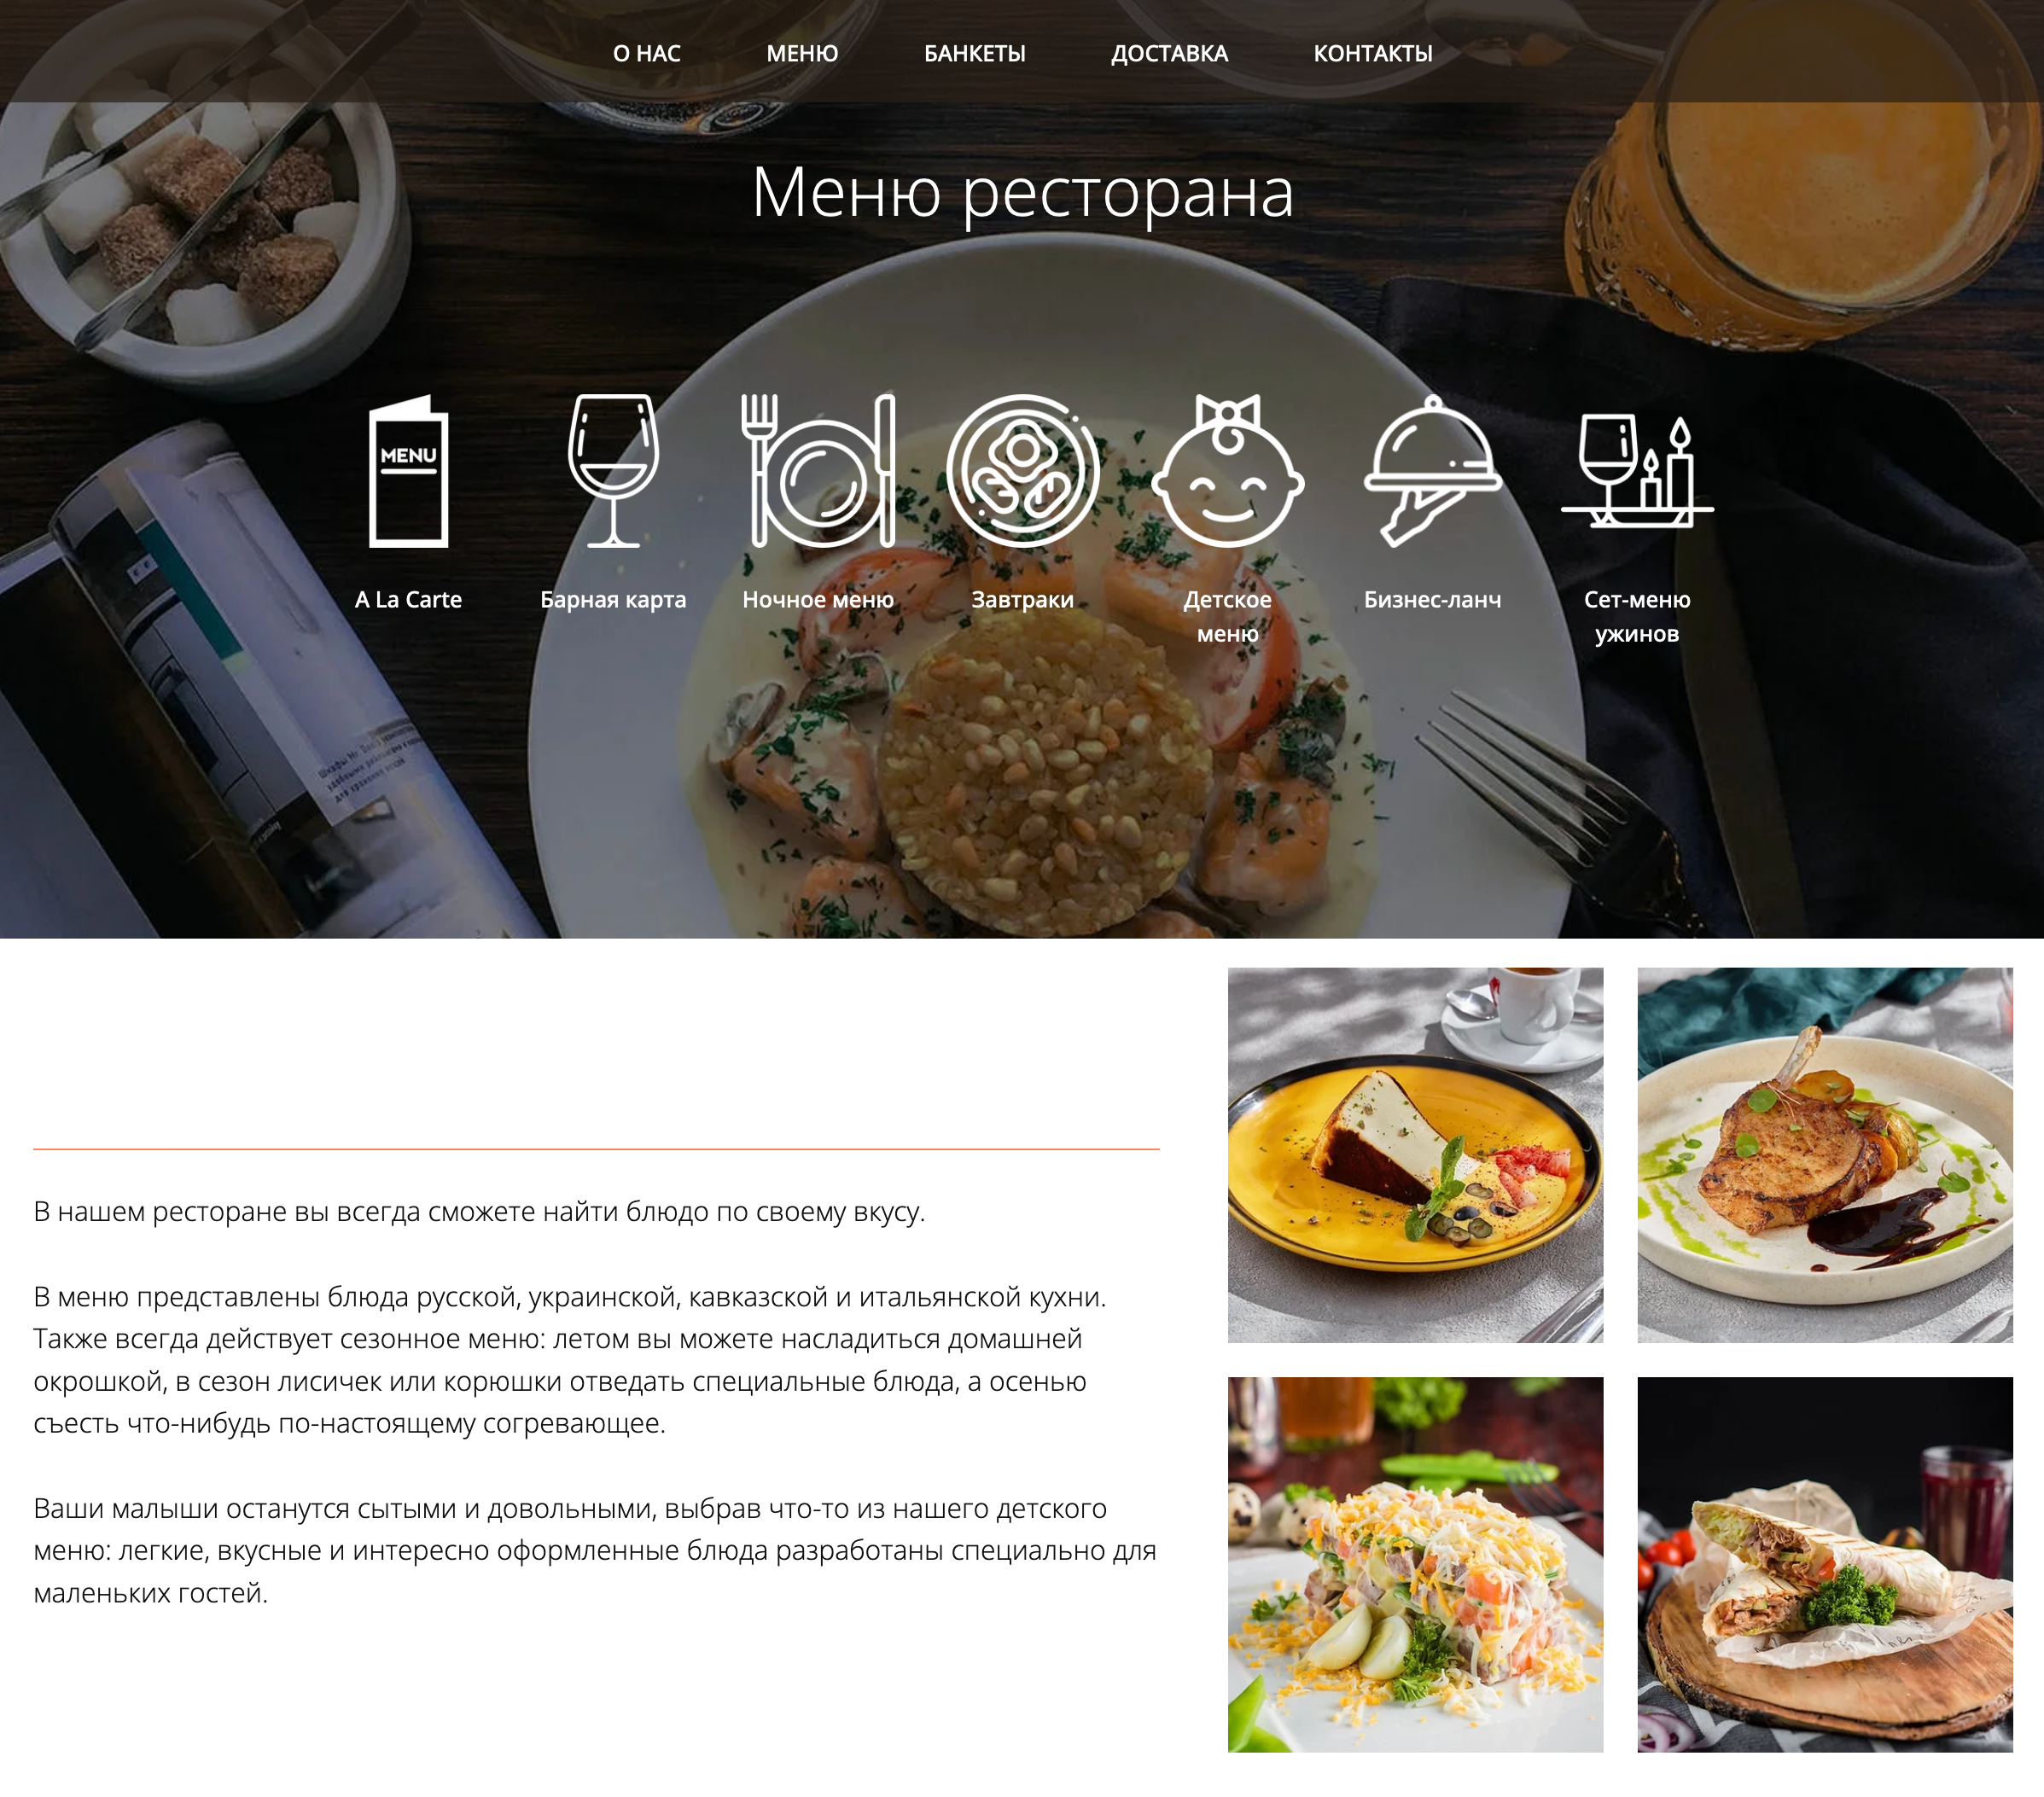 Сайт ресторана показывает меню и само заведение, чтобы гости захотели его посетить. Источник: restaurantberezki.ru